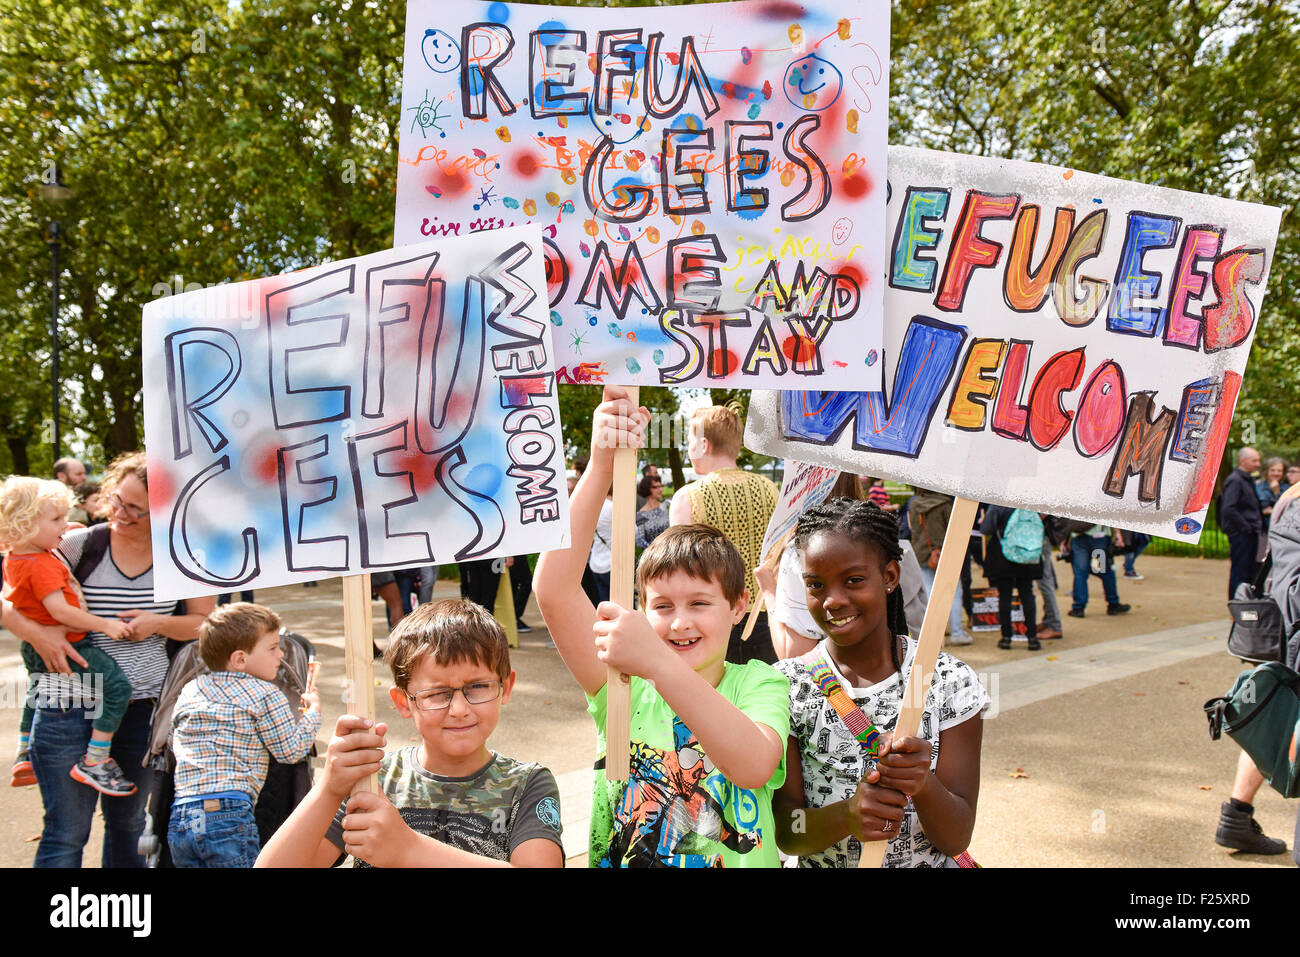 Londres, Reino Unido. 12 de septiembre de 2015. Maria, Dylan y Max exhibe con orgullo sus coloridos carteles como éstos marchan en apoyo de los refugiados. Crédito: Gordon Scammell/Alamy Live News Foto de stock